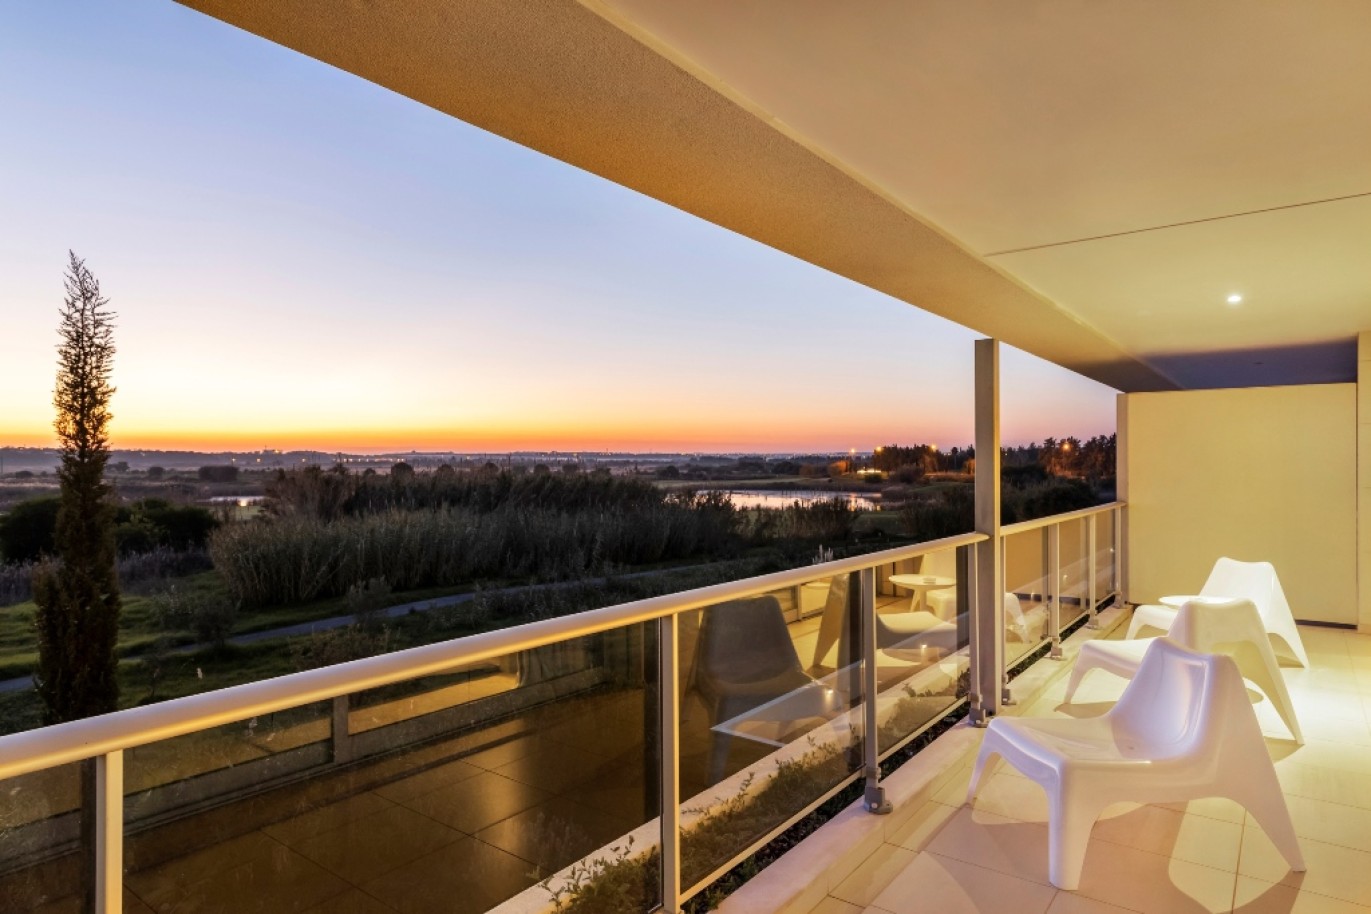 Moderno Duplex em Resort com piscina, para venda Vilamoura, Algarve_252271